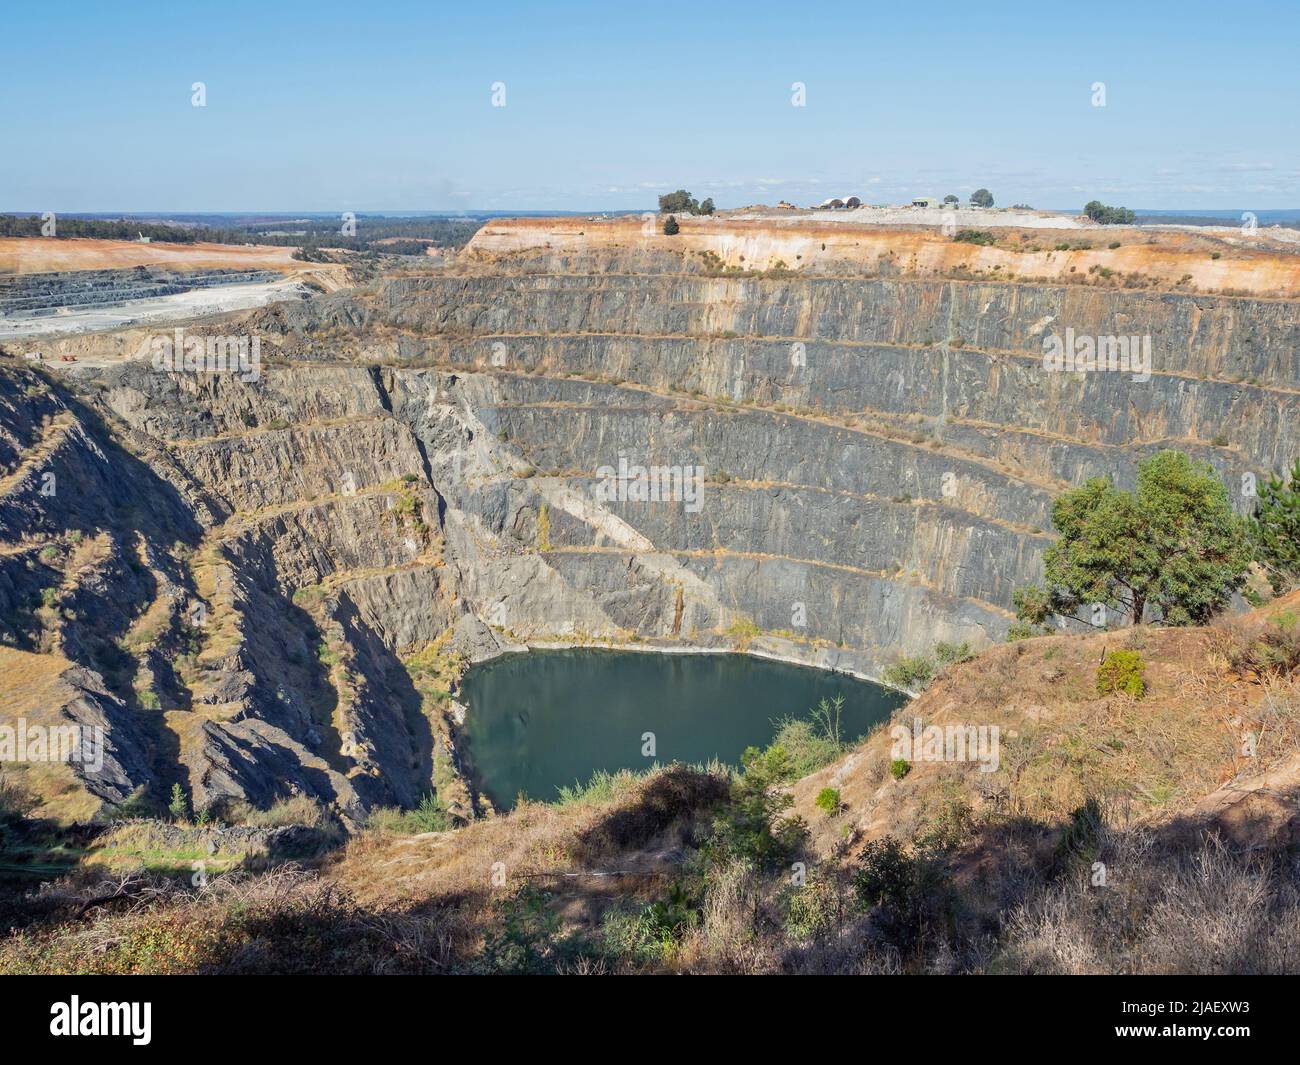 Die Lithiummine Greenbuschs ist ein Tagebaubetrieb in Westaustralien und die weltweit größte Lithiummine mit hartem Gestein. Stockfoto